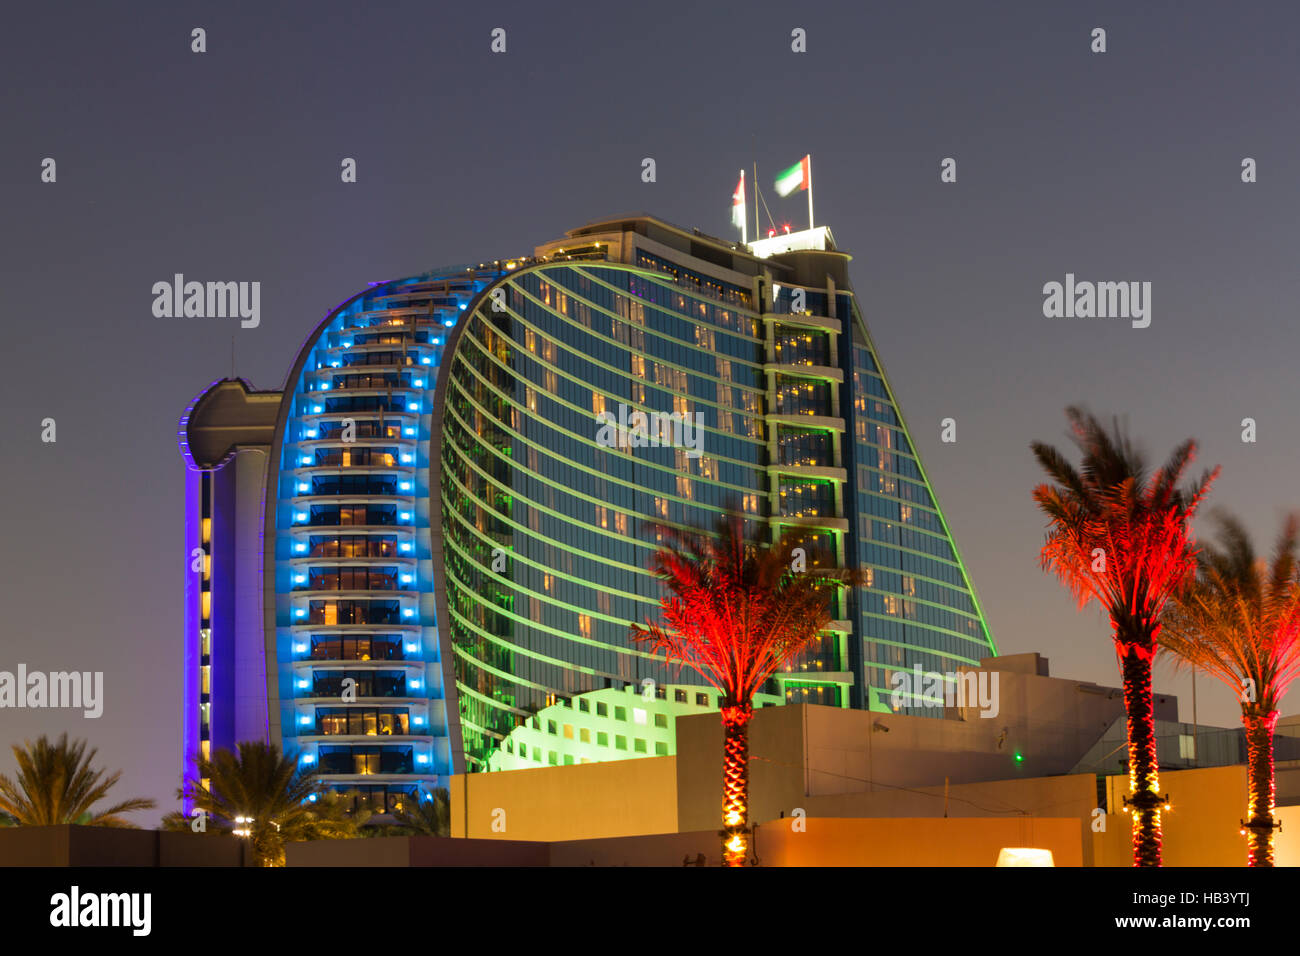 Night illuminations of the modern luxury hotel, Dubai Stock Photo